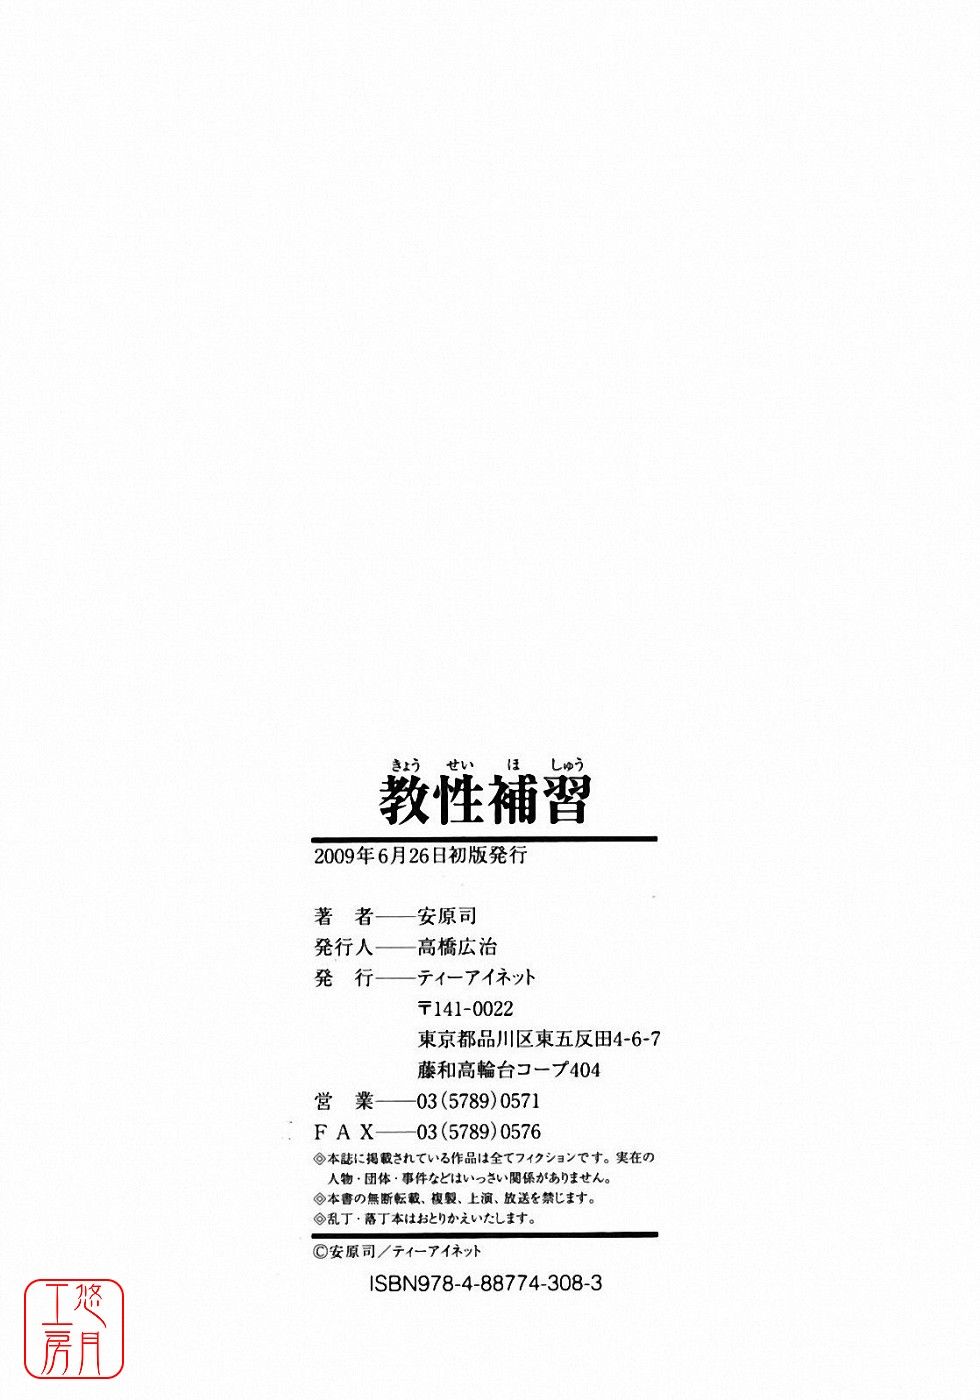 [Tsukasa Yasuhara] KYOUSEHOSYU[CHINESE] [安原司]教性補習[CHINESE]